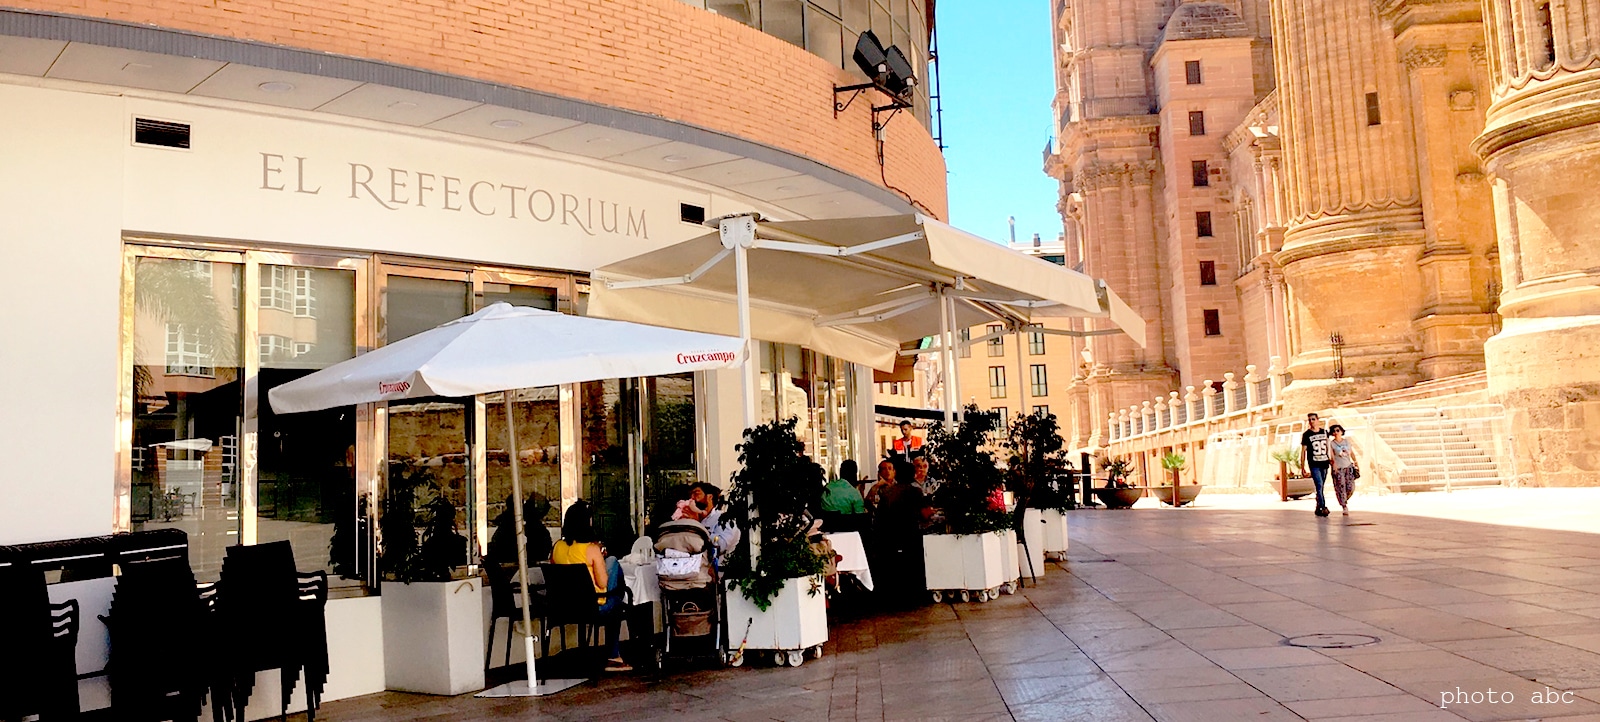 El Refectorium among Best Restaurants in Malaga